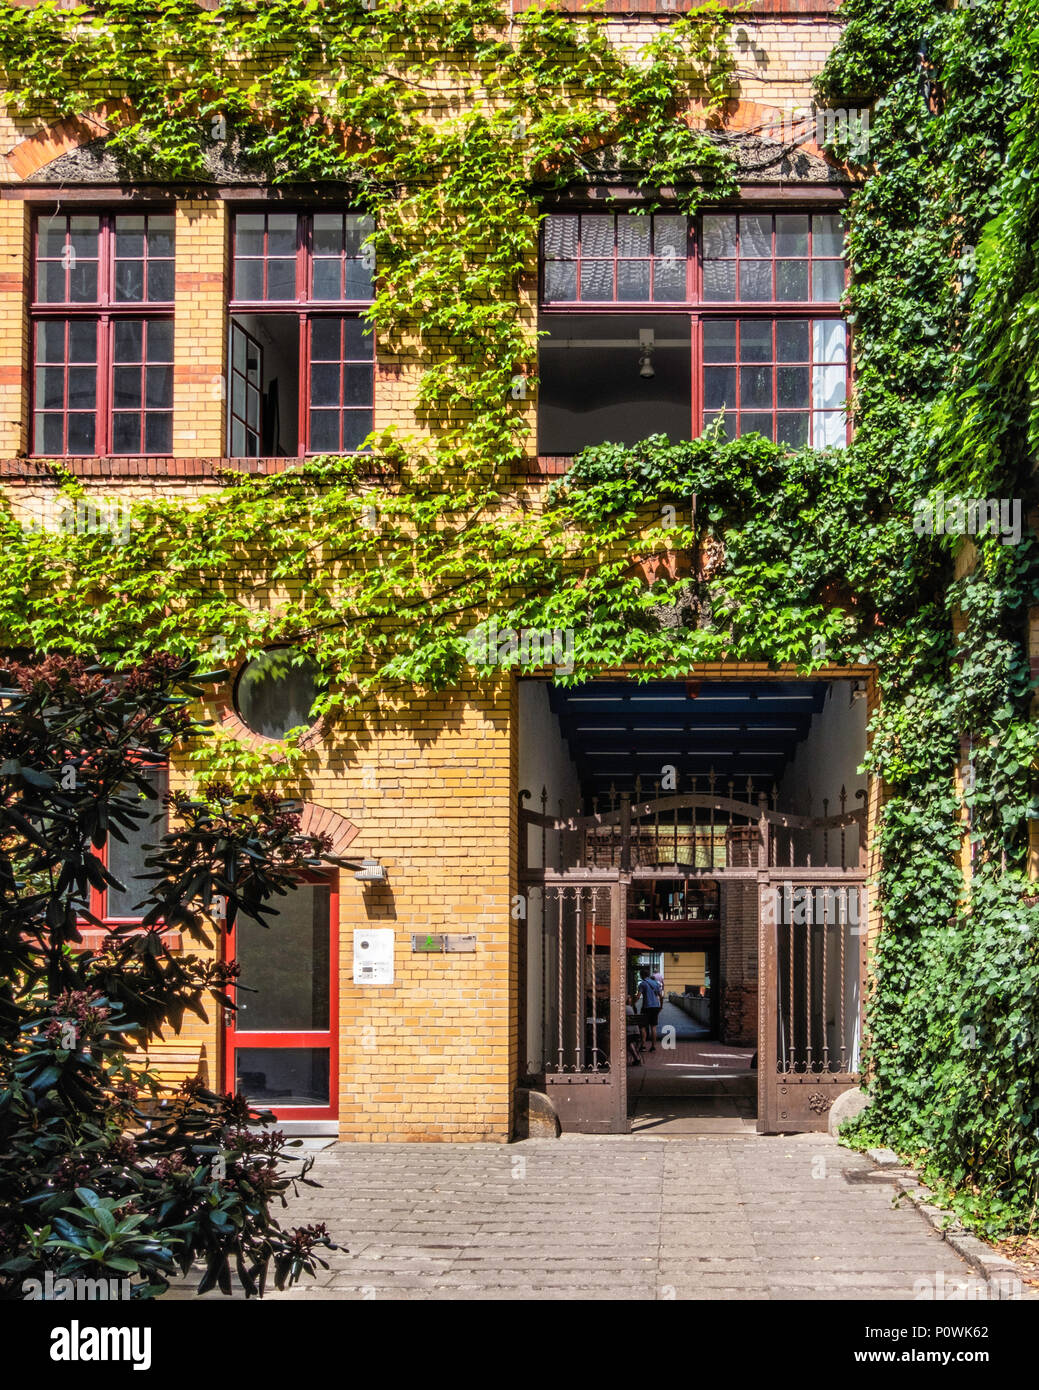 Berlin Mitte, Sophie-Gips-Höfe,cour intérieure, grilles et couverts de lierre bâtiment en brique du xixe siècle de l'ancienne usine. Banque D'Images